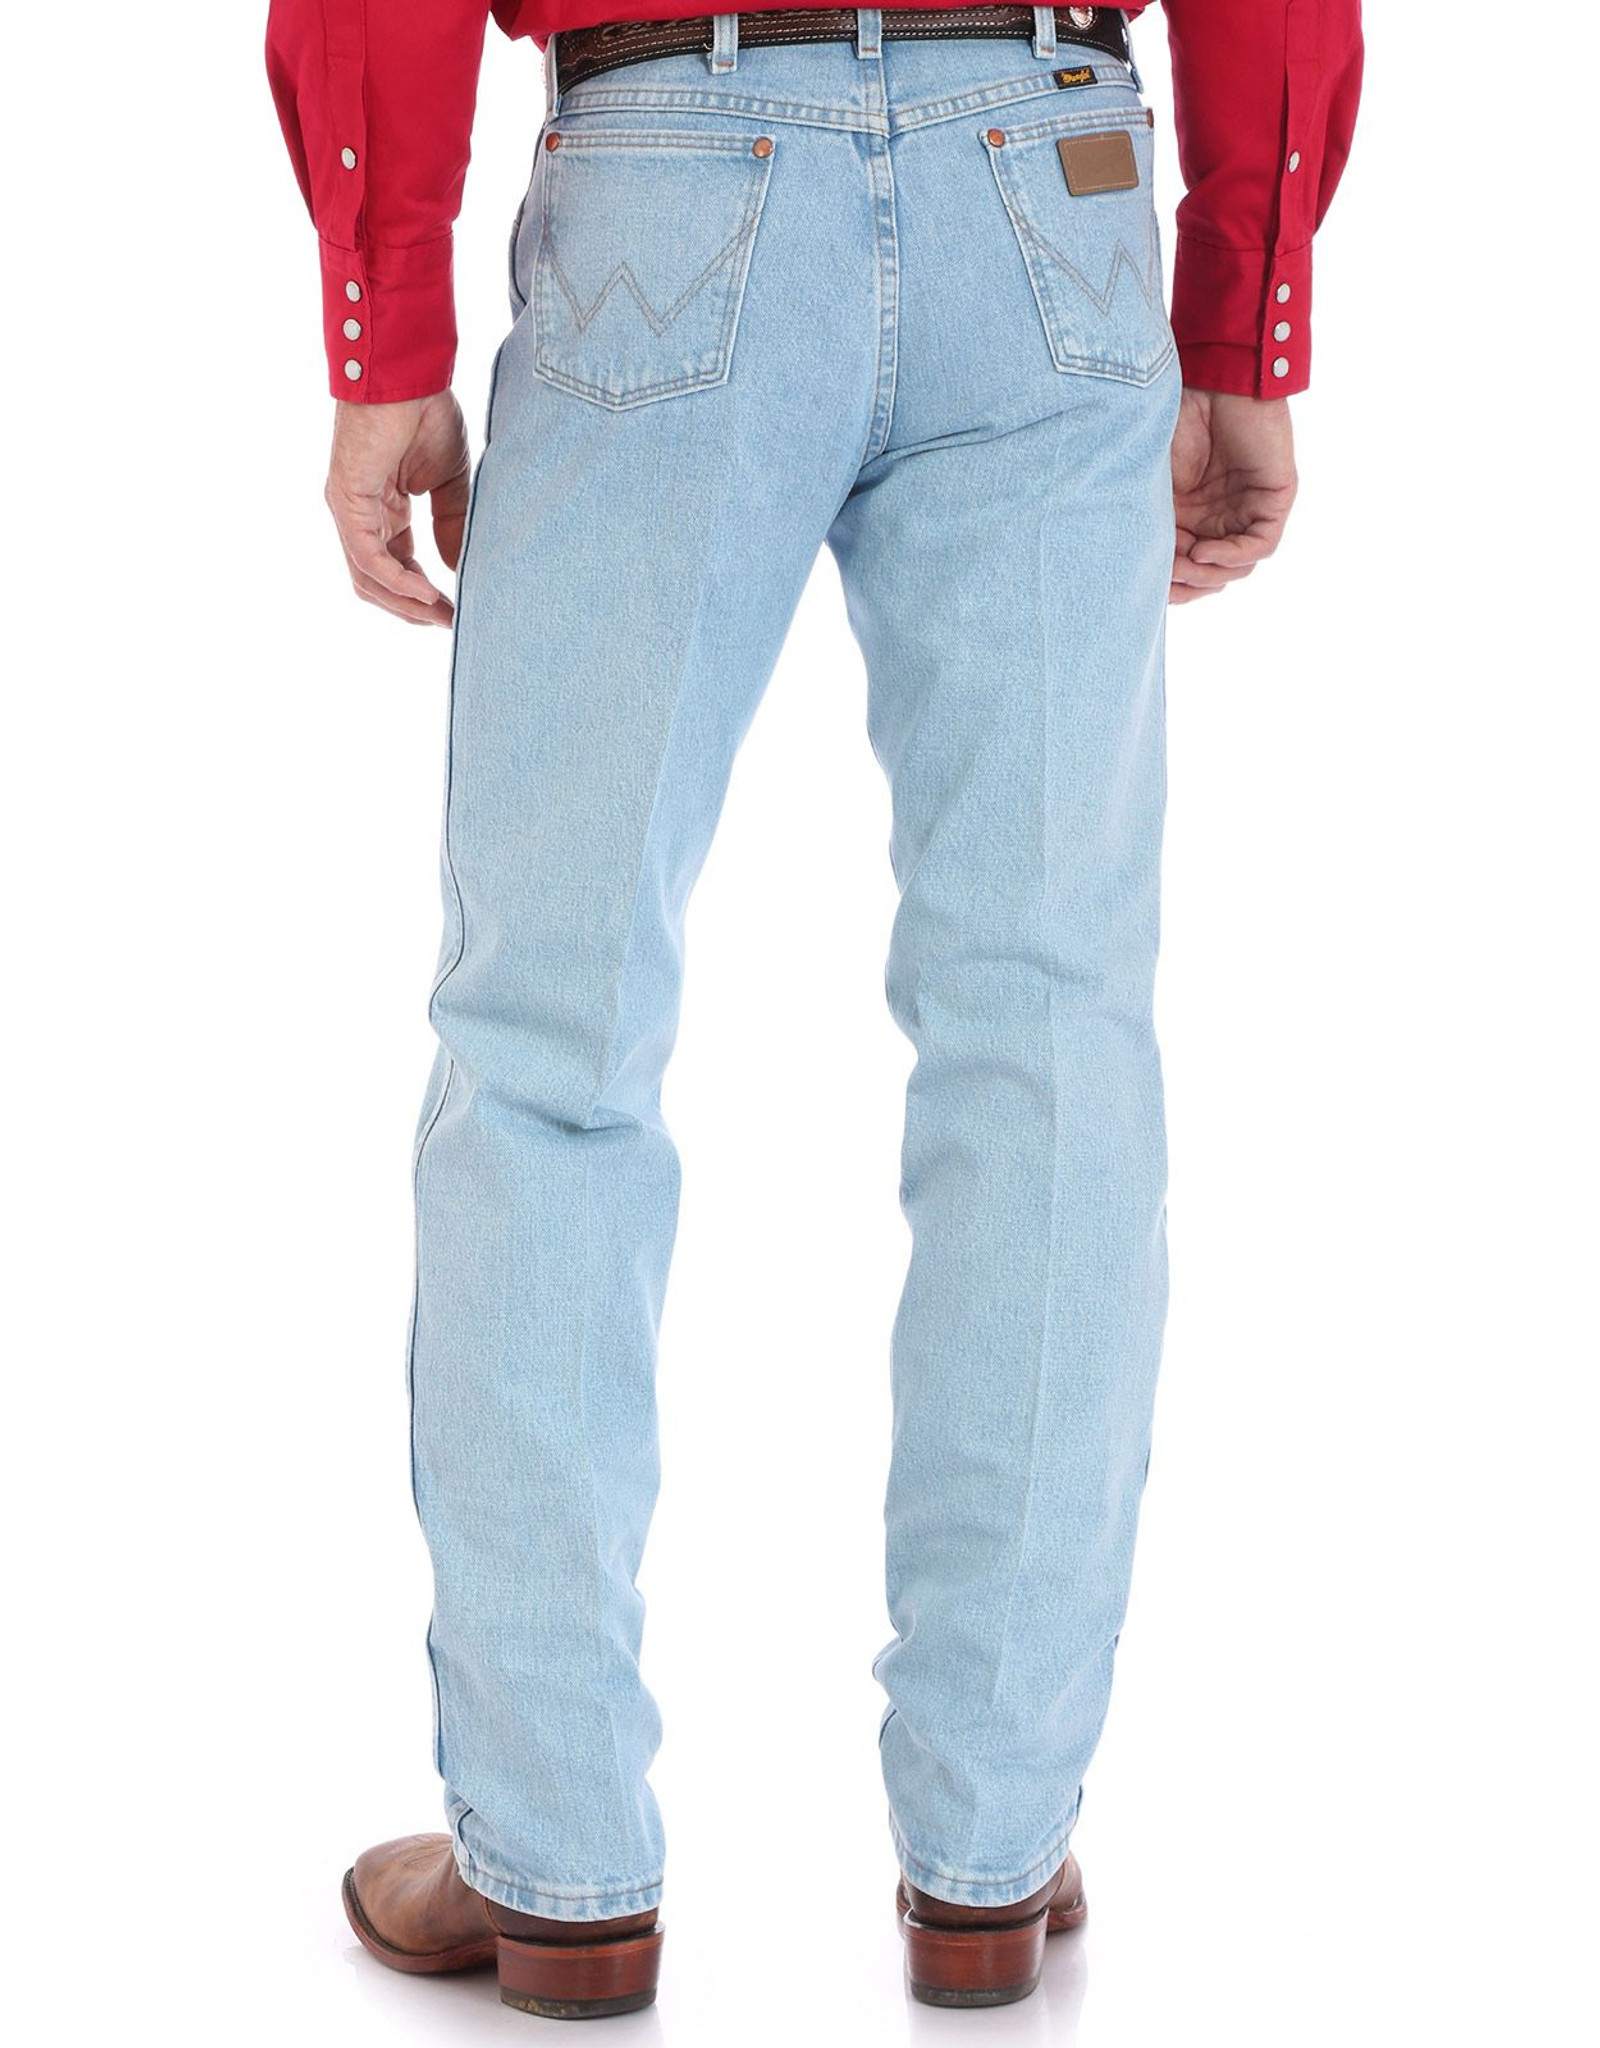 Wrangler Men's 13 Original High Rise Regular Fit Boot Cut Jeans - Bleach